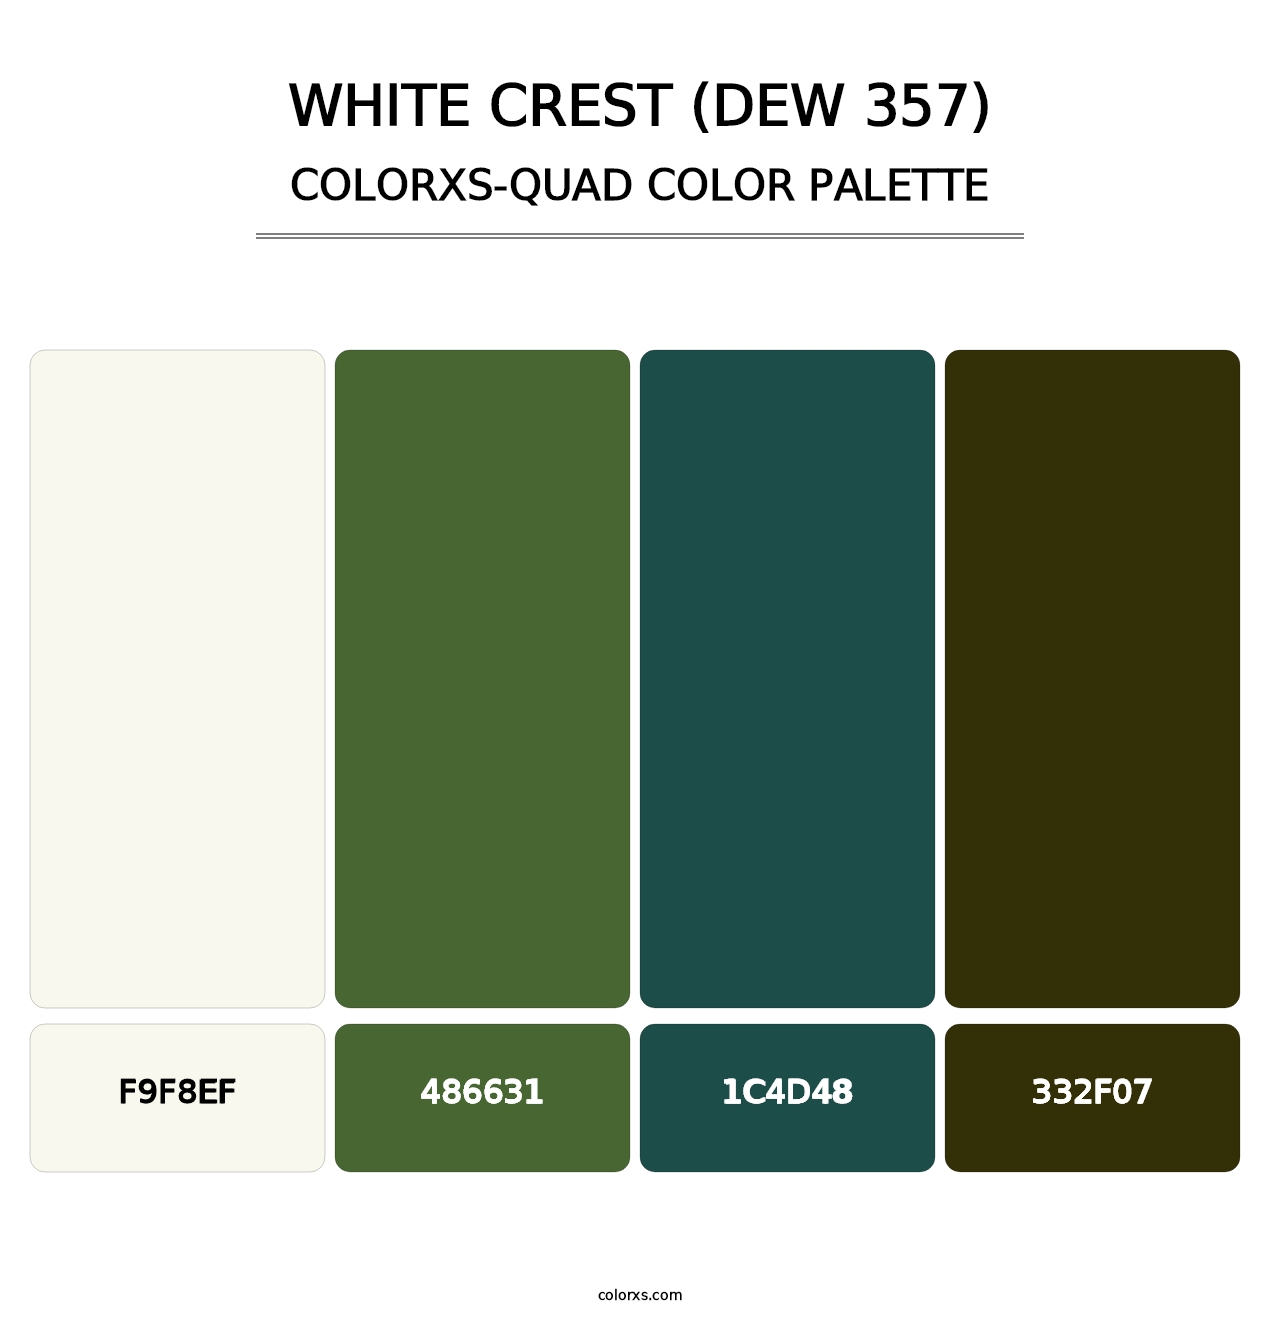 White Crest (DEW 357) - Colorxs Quad Palette